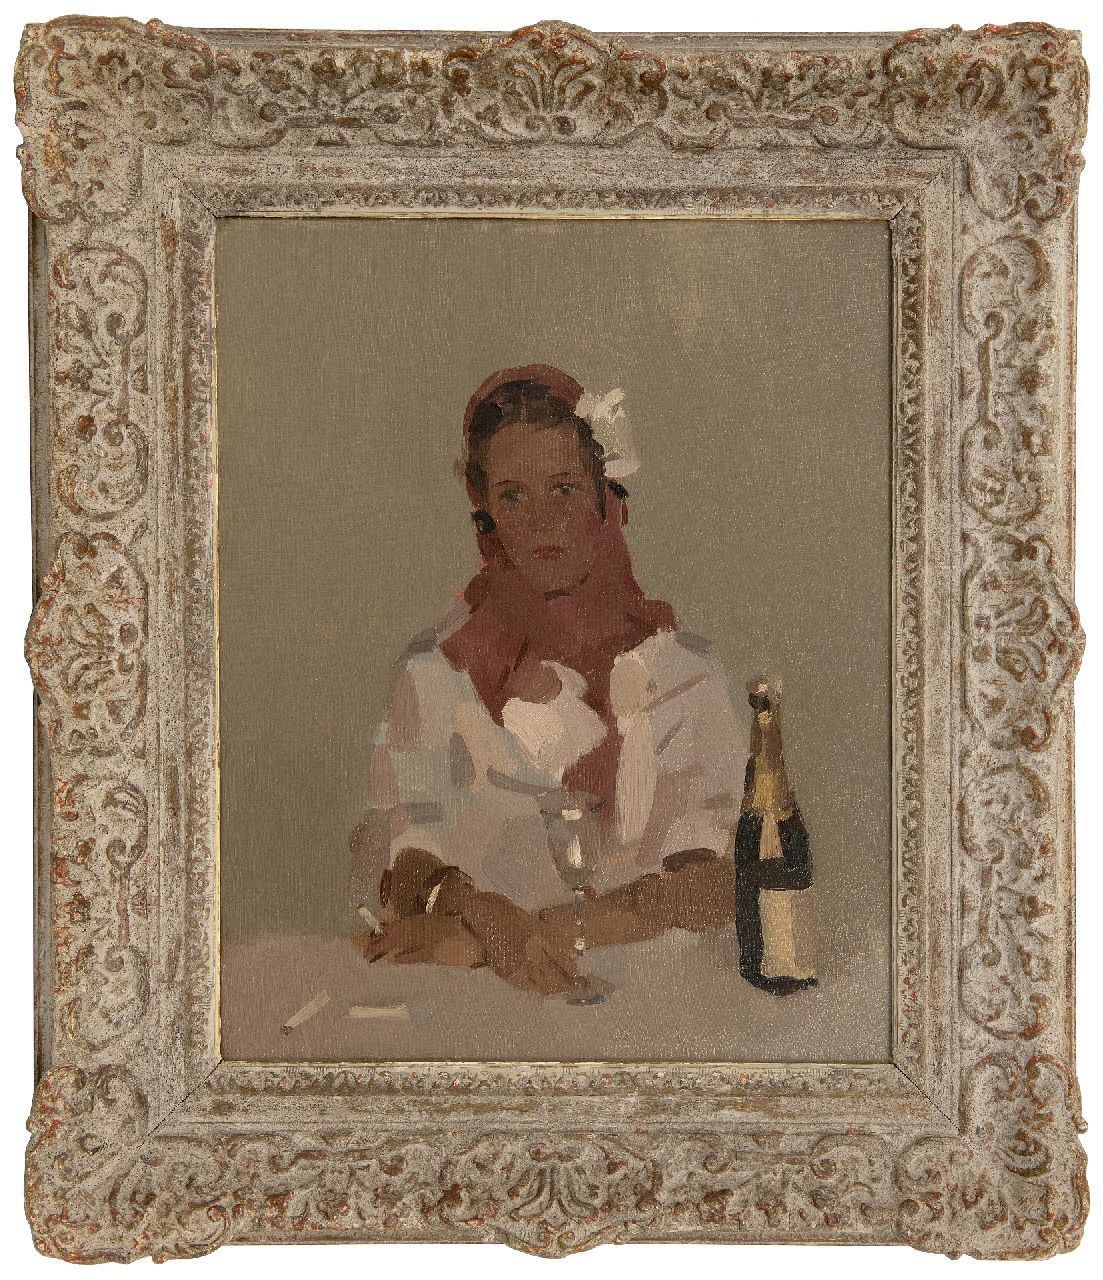 Verdonk F.W.  | Frederik Willem 'Frits' Verdonk | Schilderijen te koop aangeboden | Vrouw met sigaret en champagnefles, olieverf op doek 50,2 x 40,1 cm